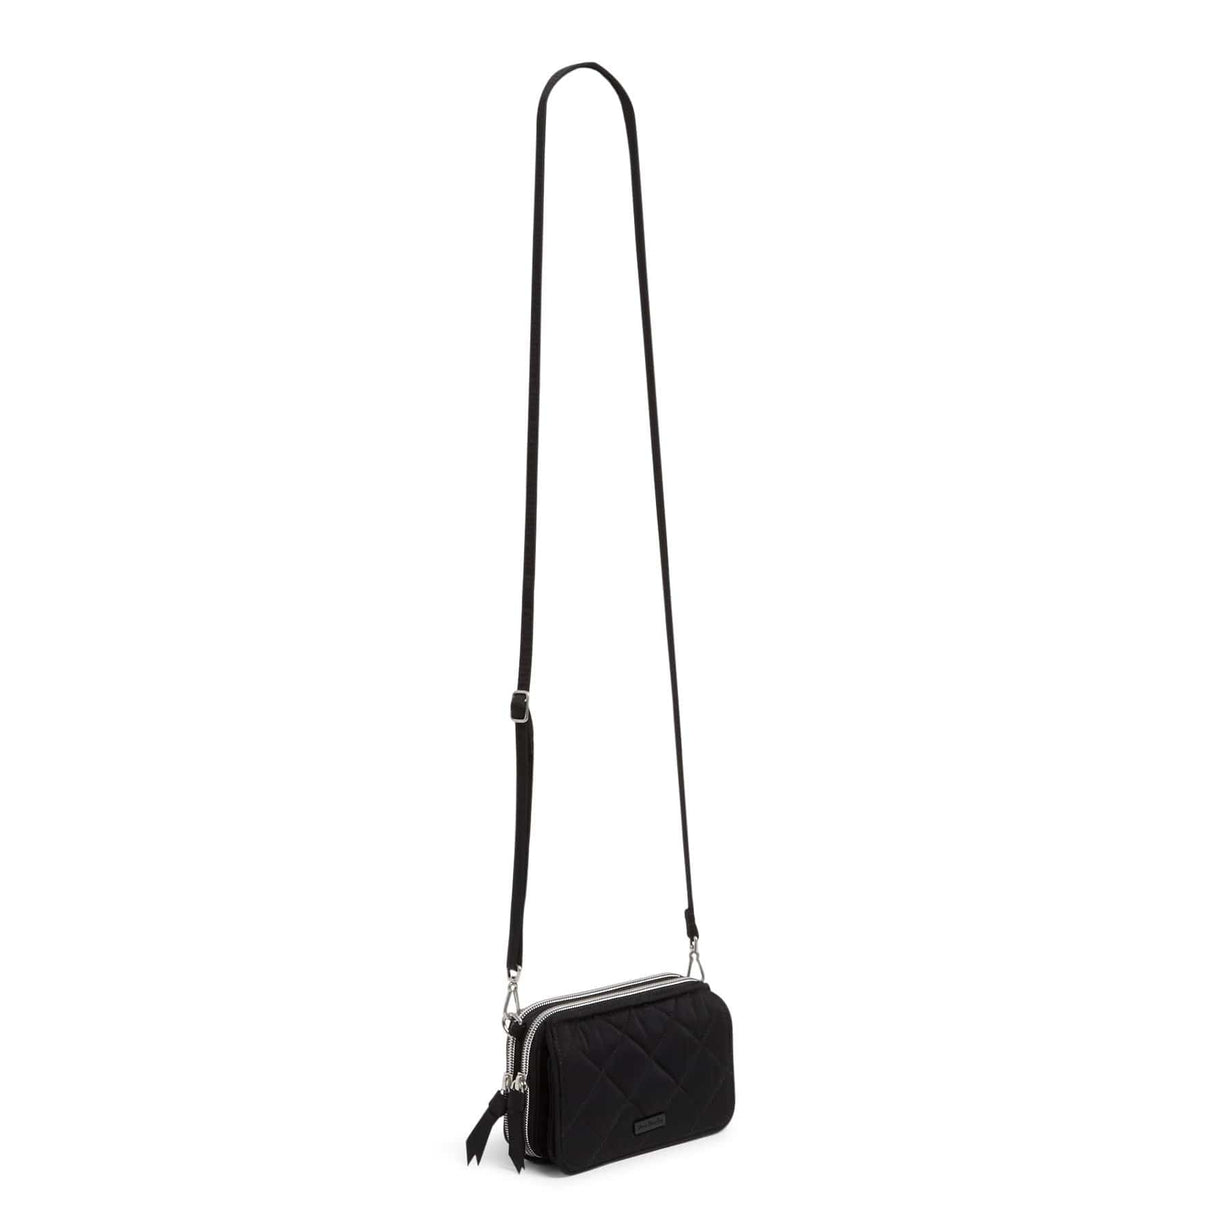 Vera Bradley RFID Convertible Small Crossbody Handbag